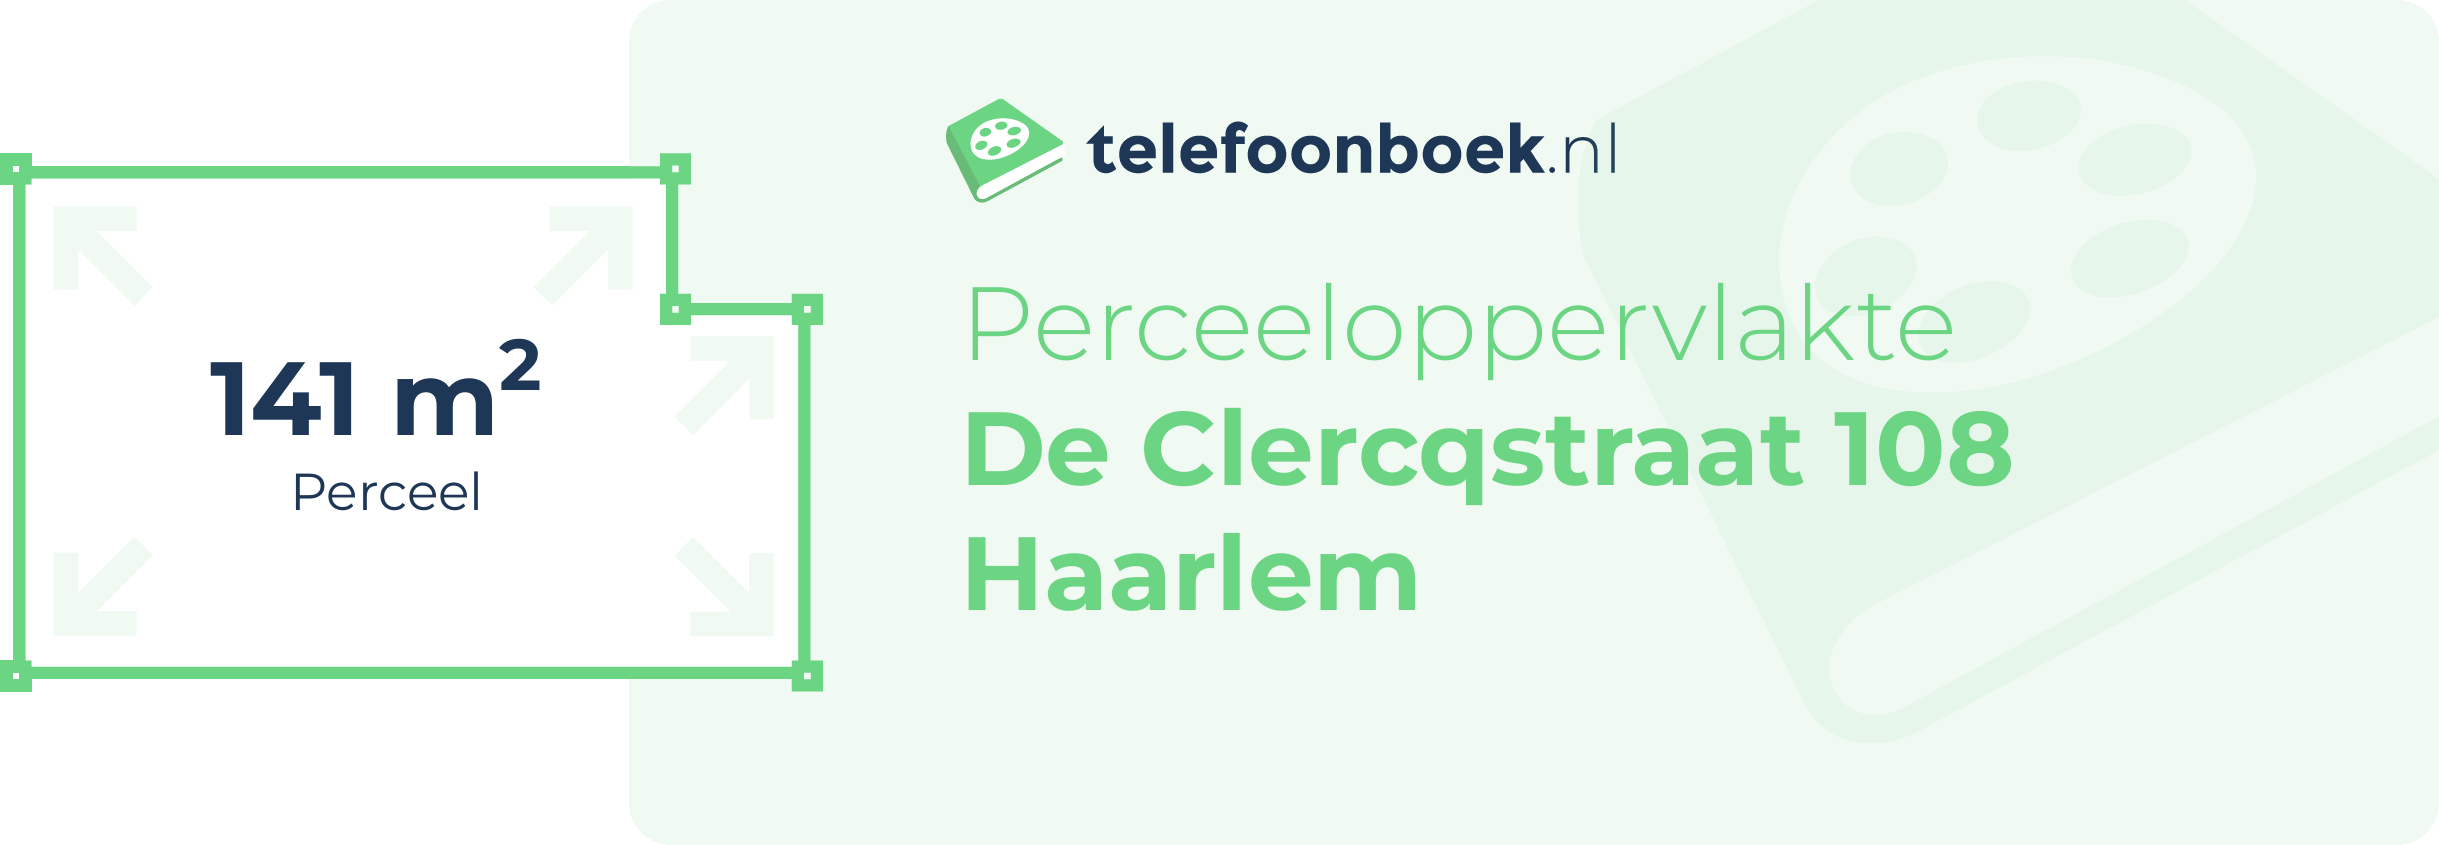 Perceeloppervlakte De Clercqstraat 108 Haarlem